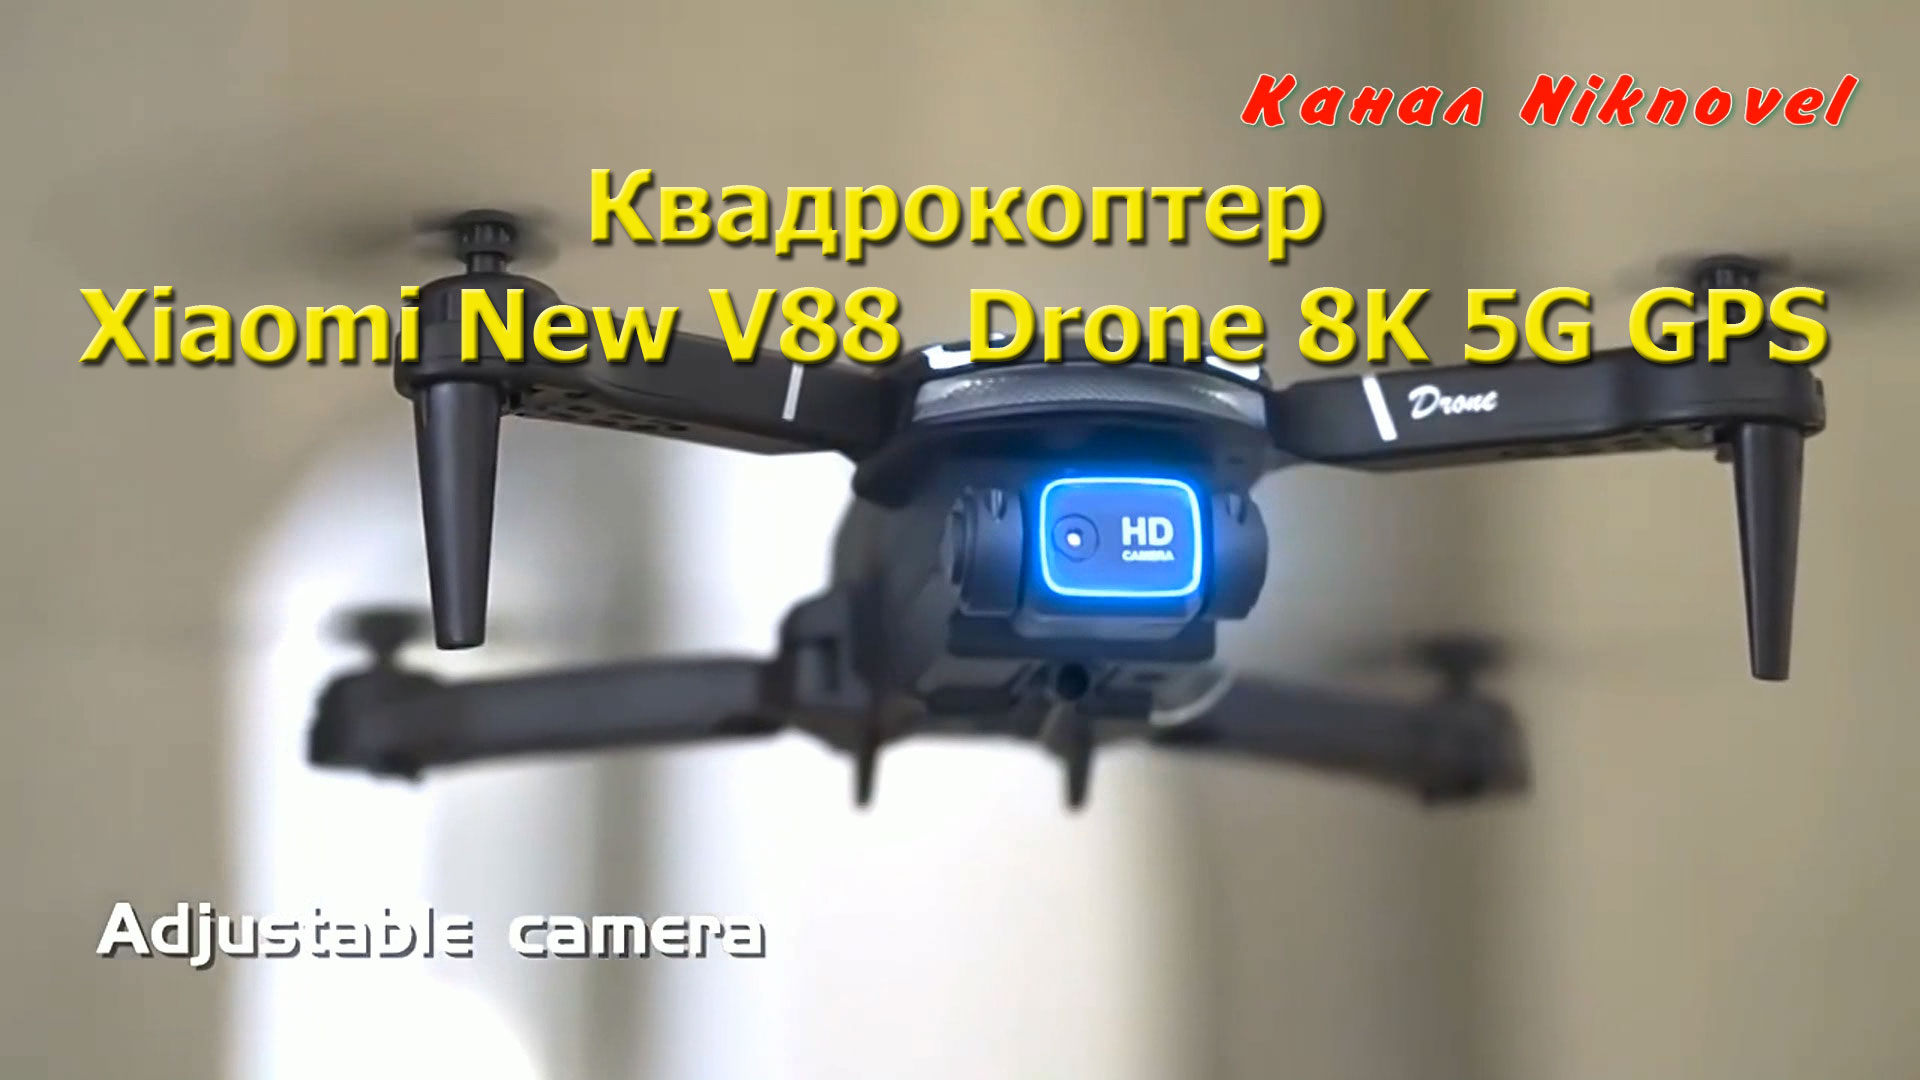 Квадрокоптер, дрон Xiaomi New V88 Drone 8K 5G GPS. Обзор.